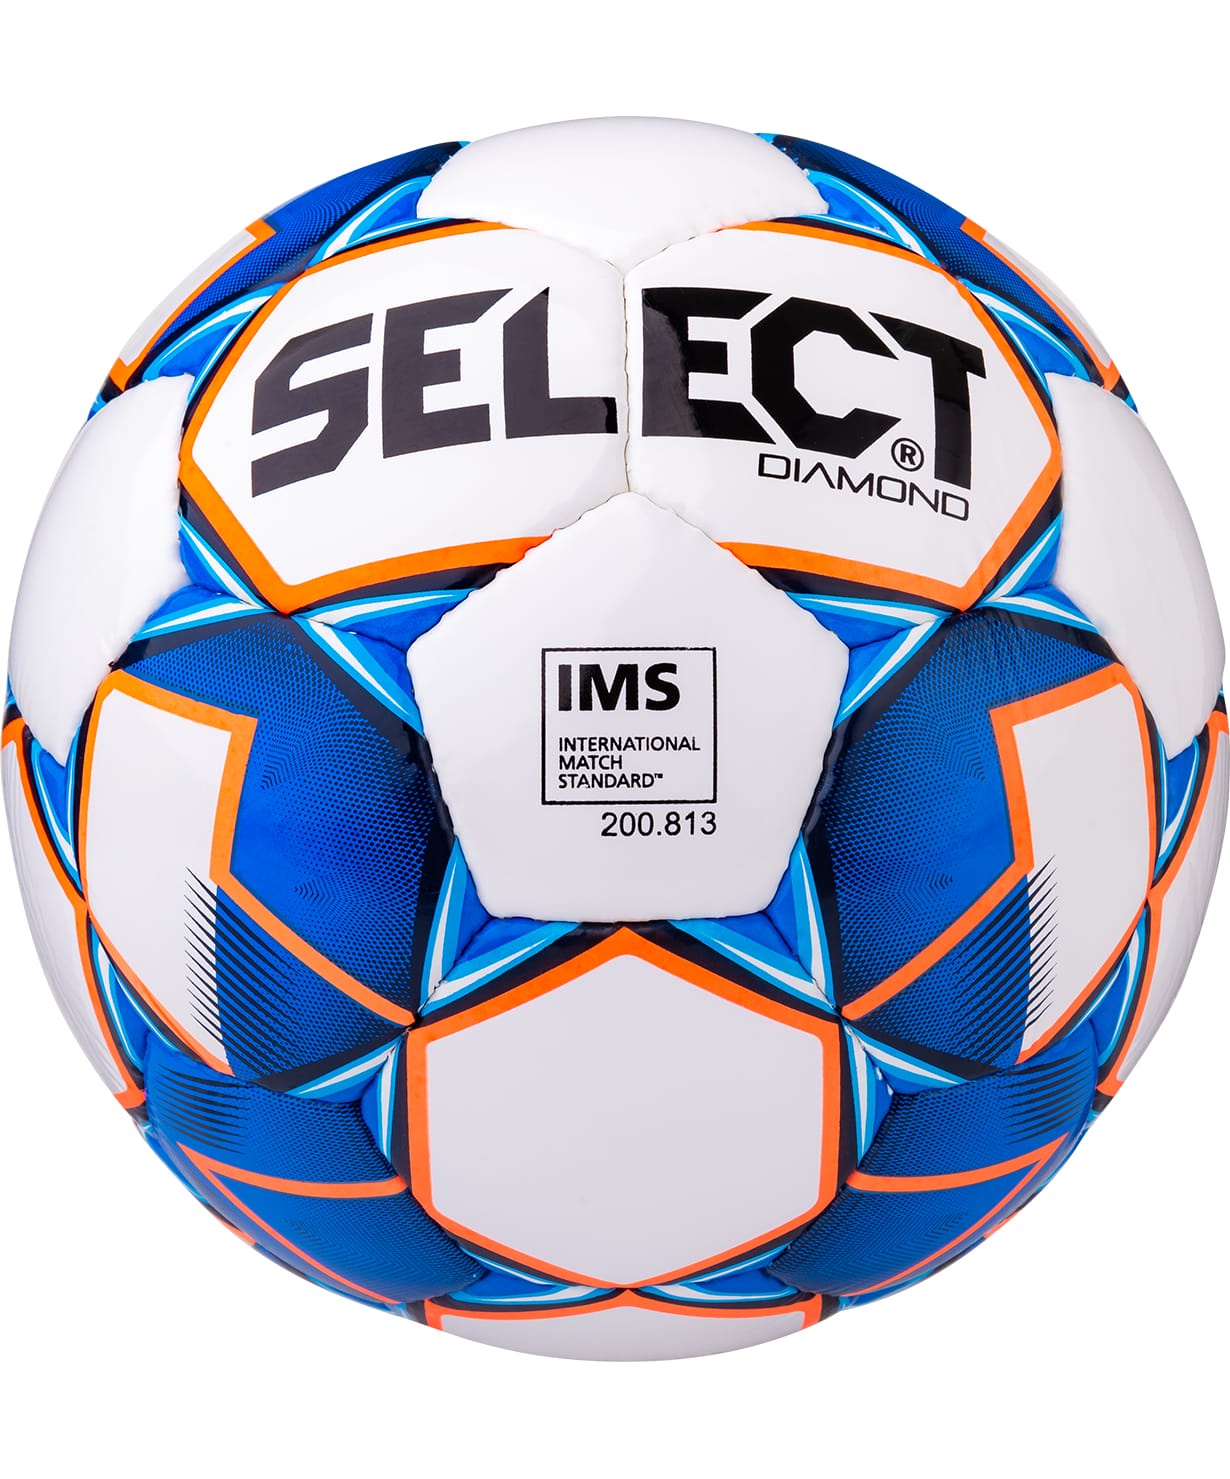 Футбольный мяч Select Diamond IMS №3 white/blue/orange